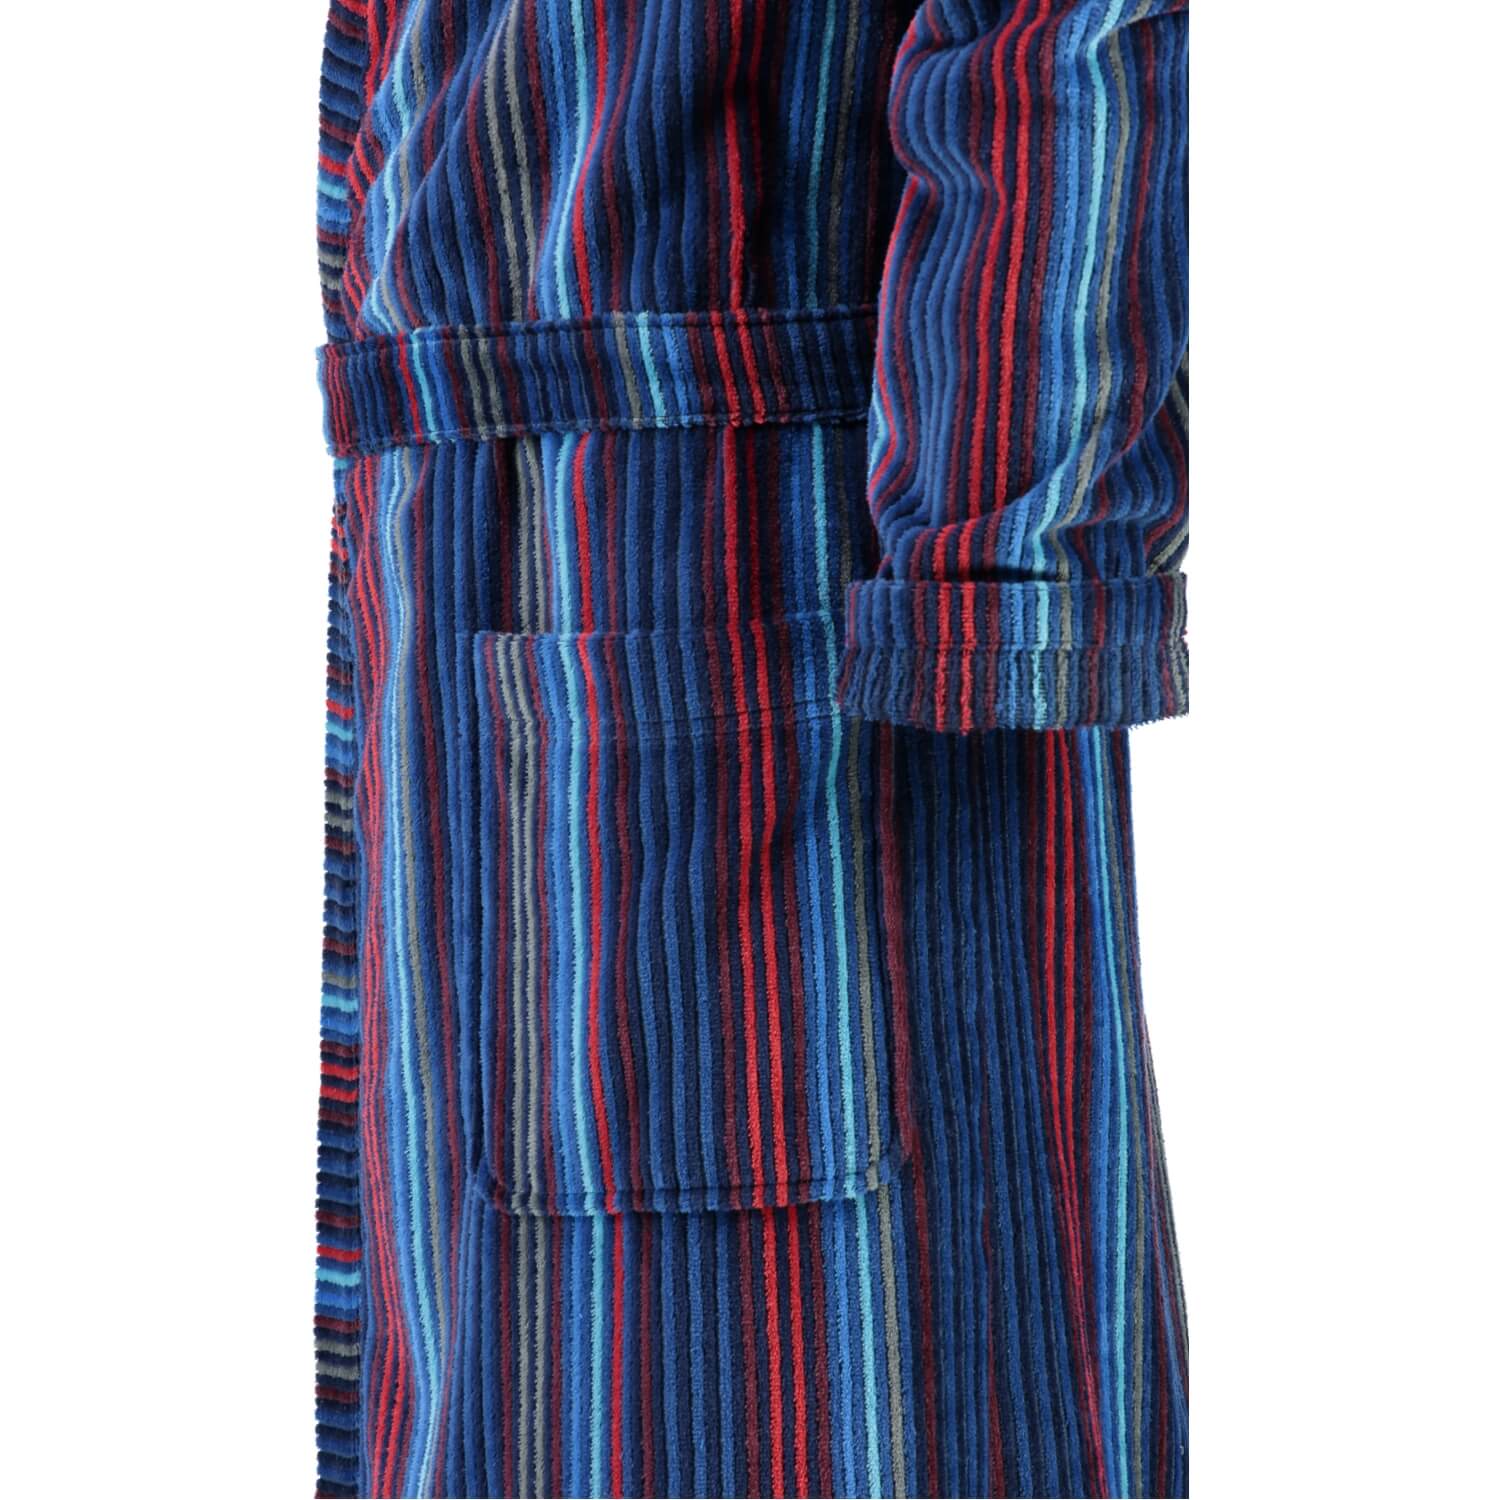 Мужской халат Kimono Blau Multicolor